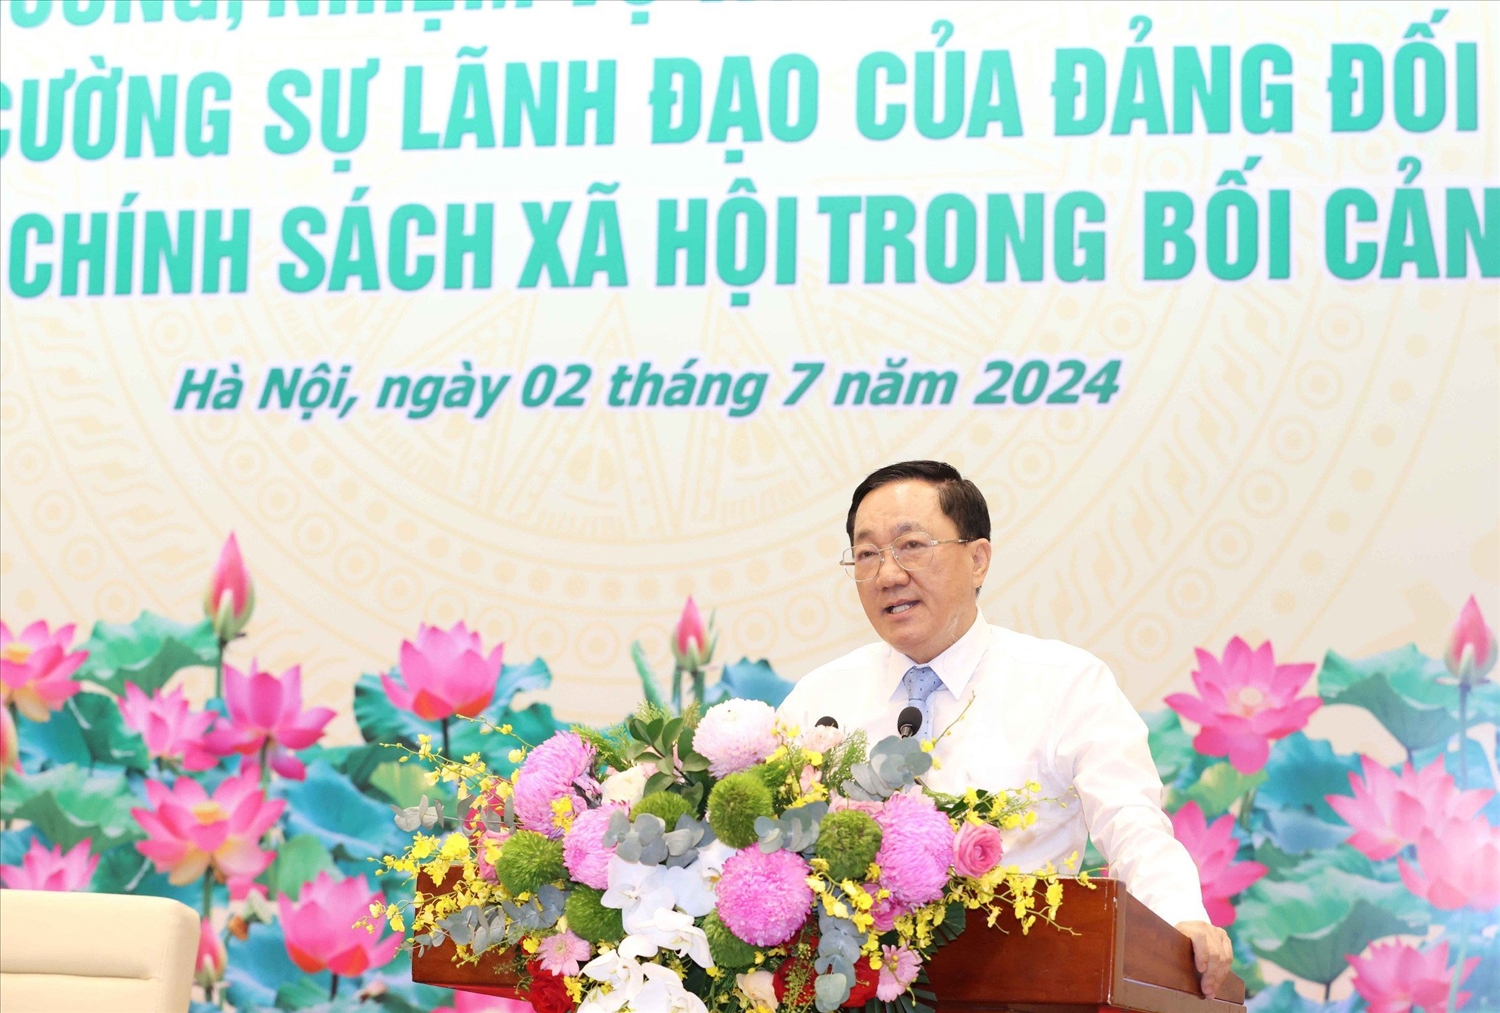 Tổng Giám đốc NHCSXH Dương Quyết Thắng báo cáo kết quả triển khai thực hiện tín dụng chính sách xã hội